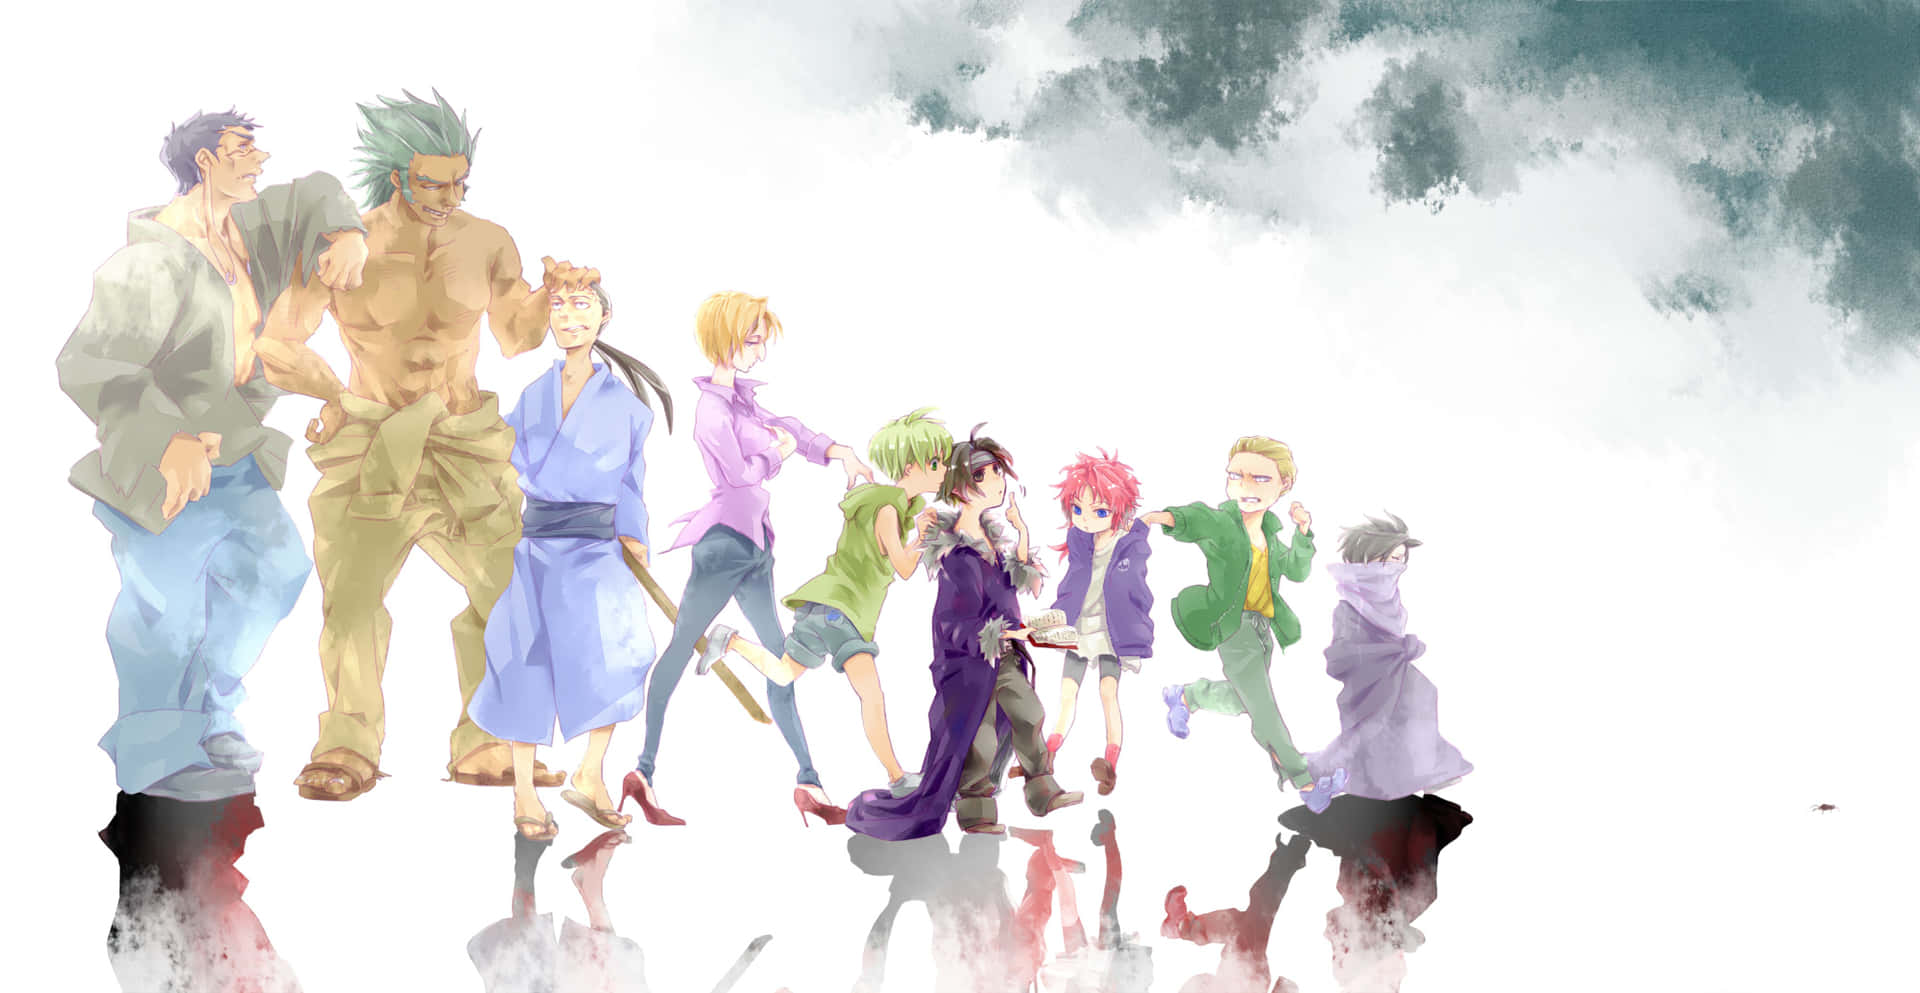 Ungrupo De Personajes De Anime Parados En Un Grupo Fondo de pantalla